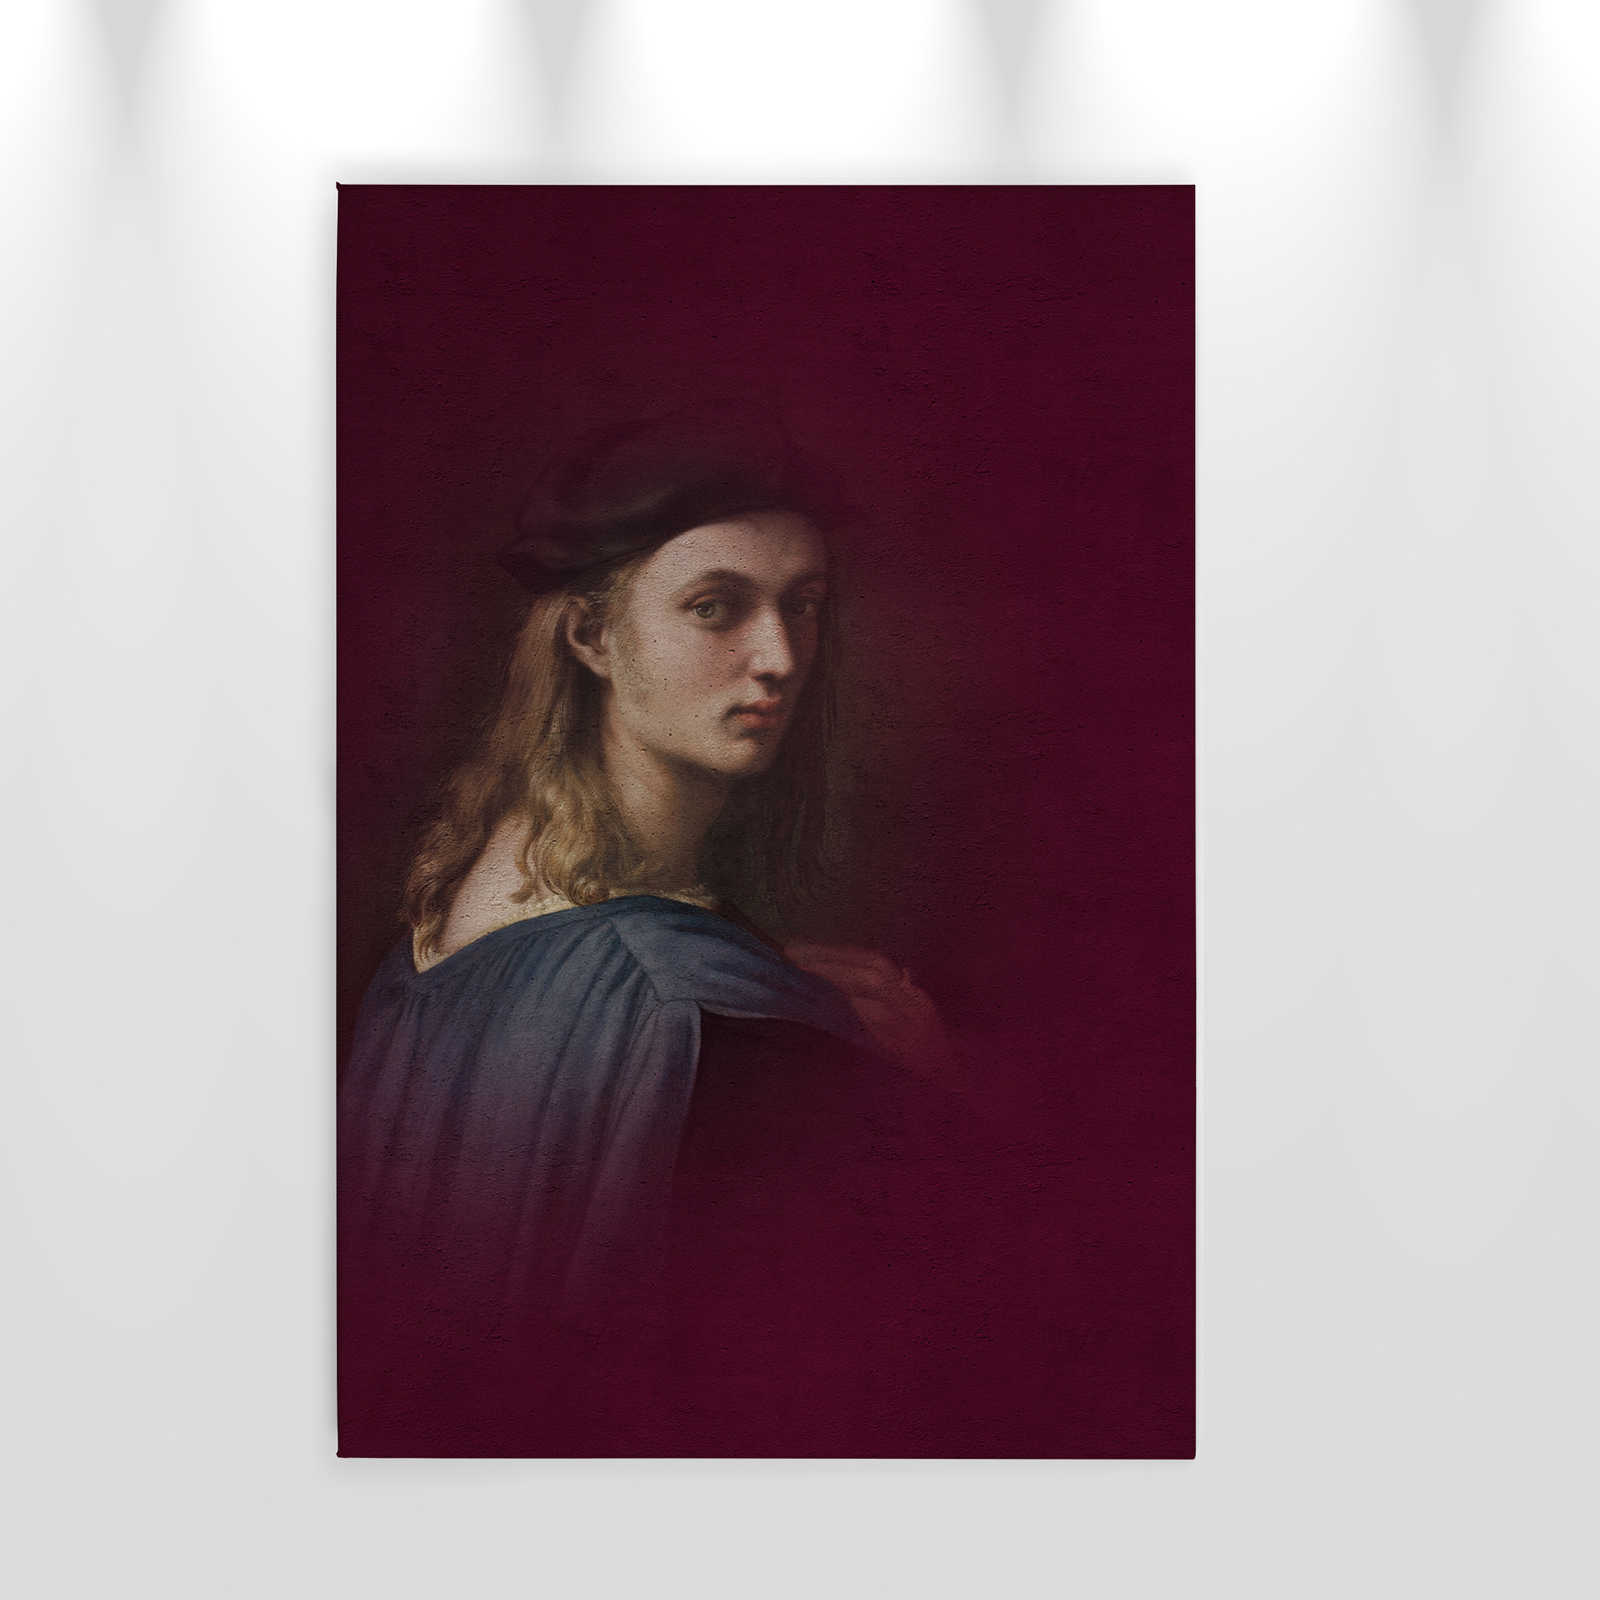             Canvas schilderij klassiek portret jongeman - 0,60 m x 0,90 m
        